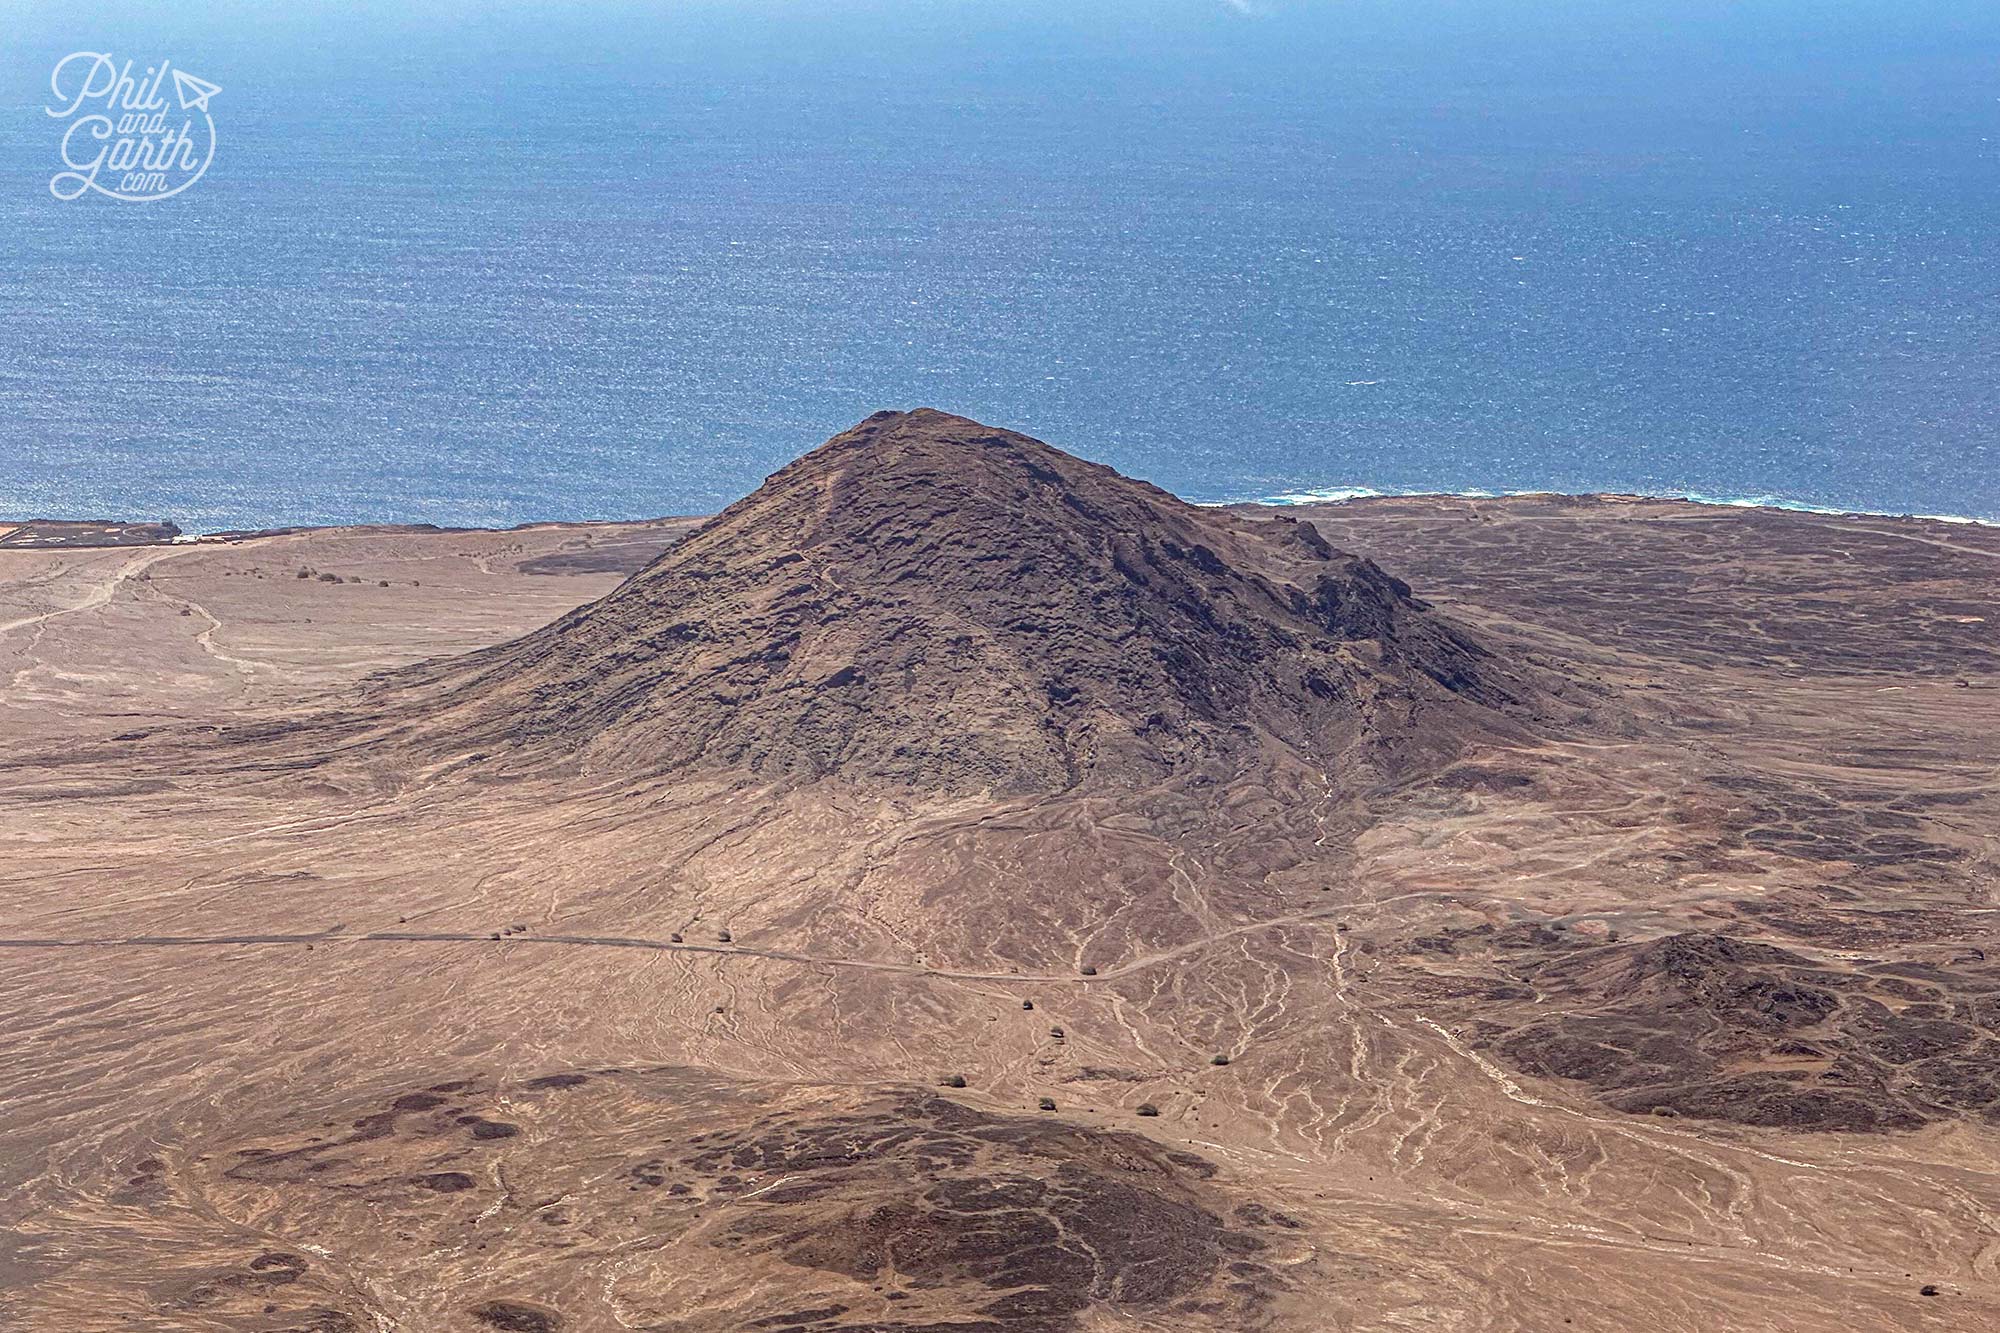 Sal's landscape is desert-like with extinct volcanoes